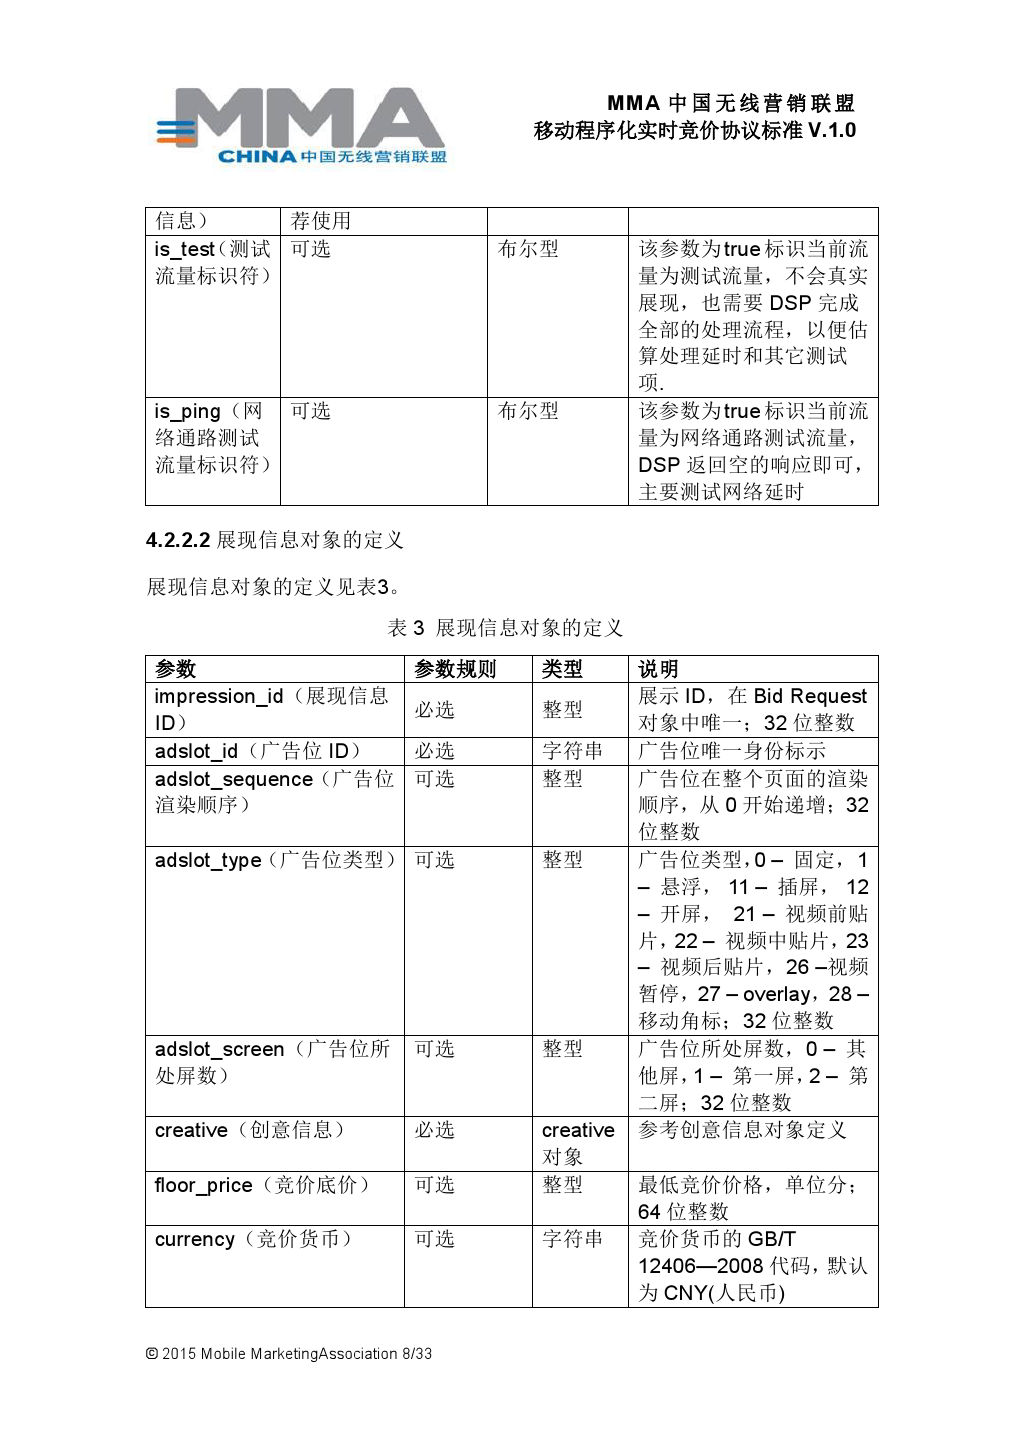 MMA中国无线营销联盟移动程序化实时竞价协议标准V.1.0_000009